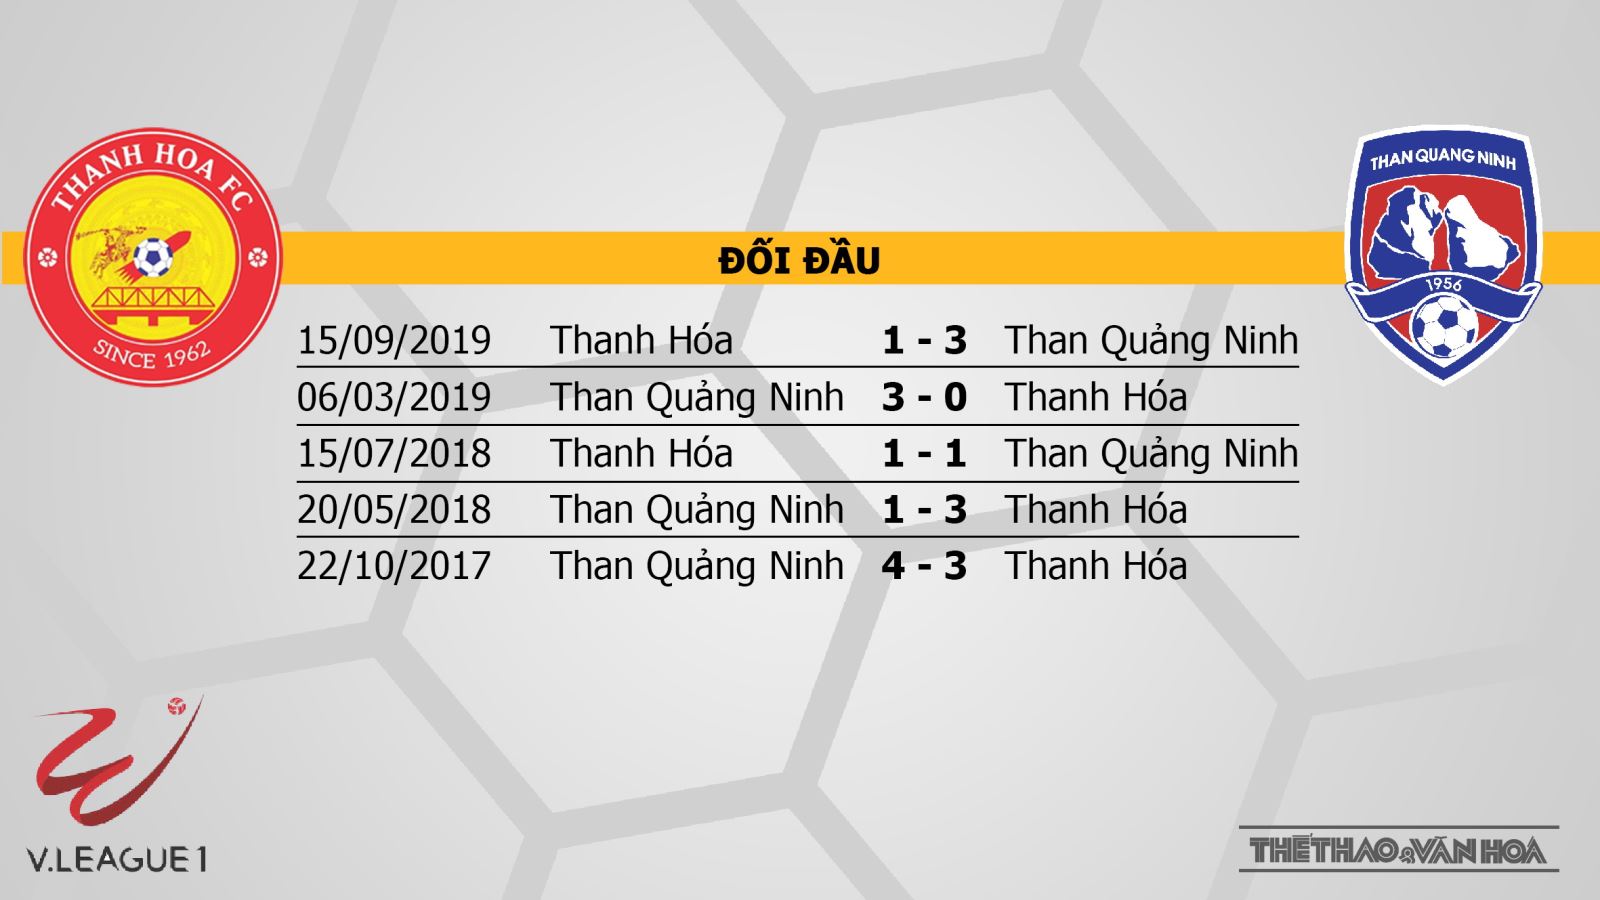 Thanh Hóa vs Than Quảng Ninh, Thanh Hoá, nhận định bóng đá bóng đá, trực tiếp bóng đá, V-League, kèo bóng đá, nhận định bóng đá, nhận định